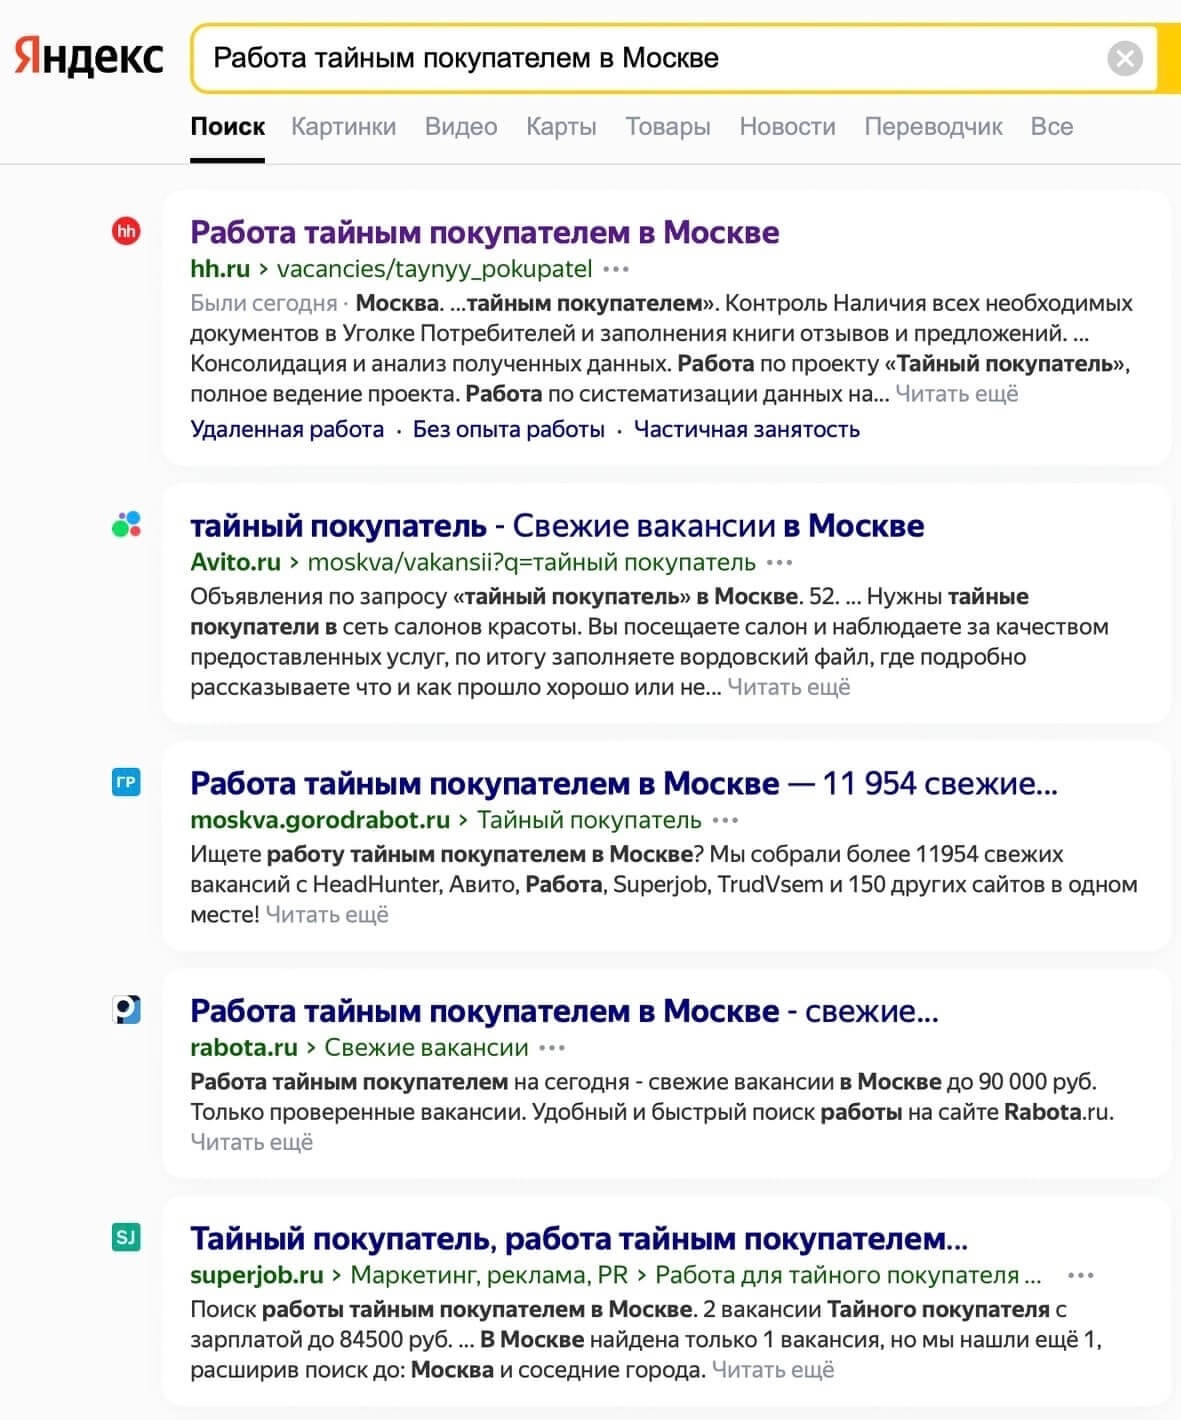 вакансии тайного покупателя в выдаче «Яндекса»